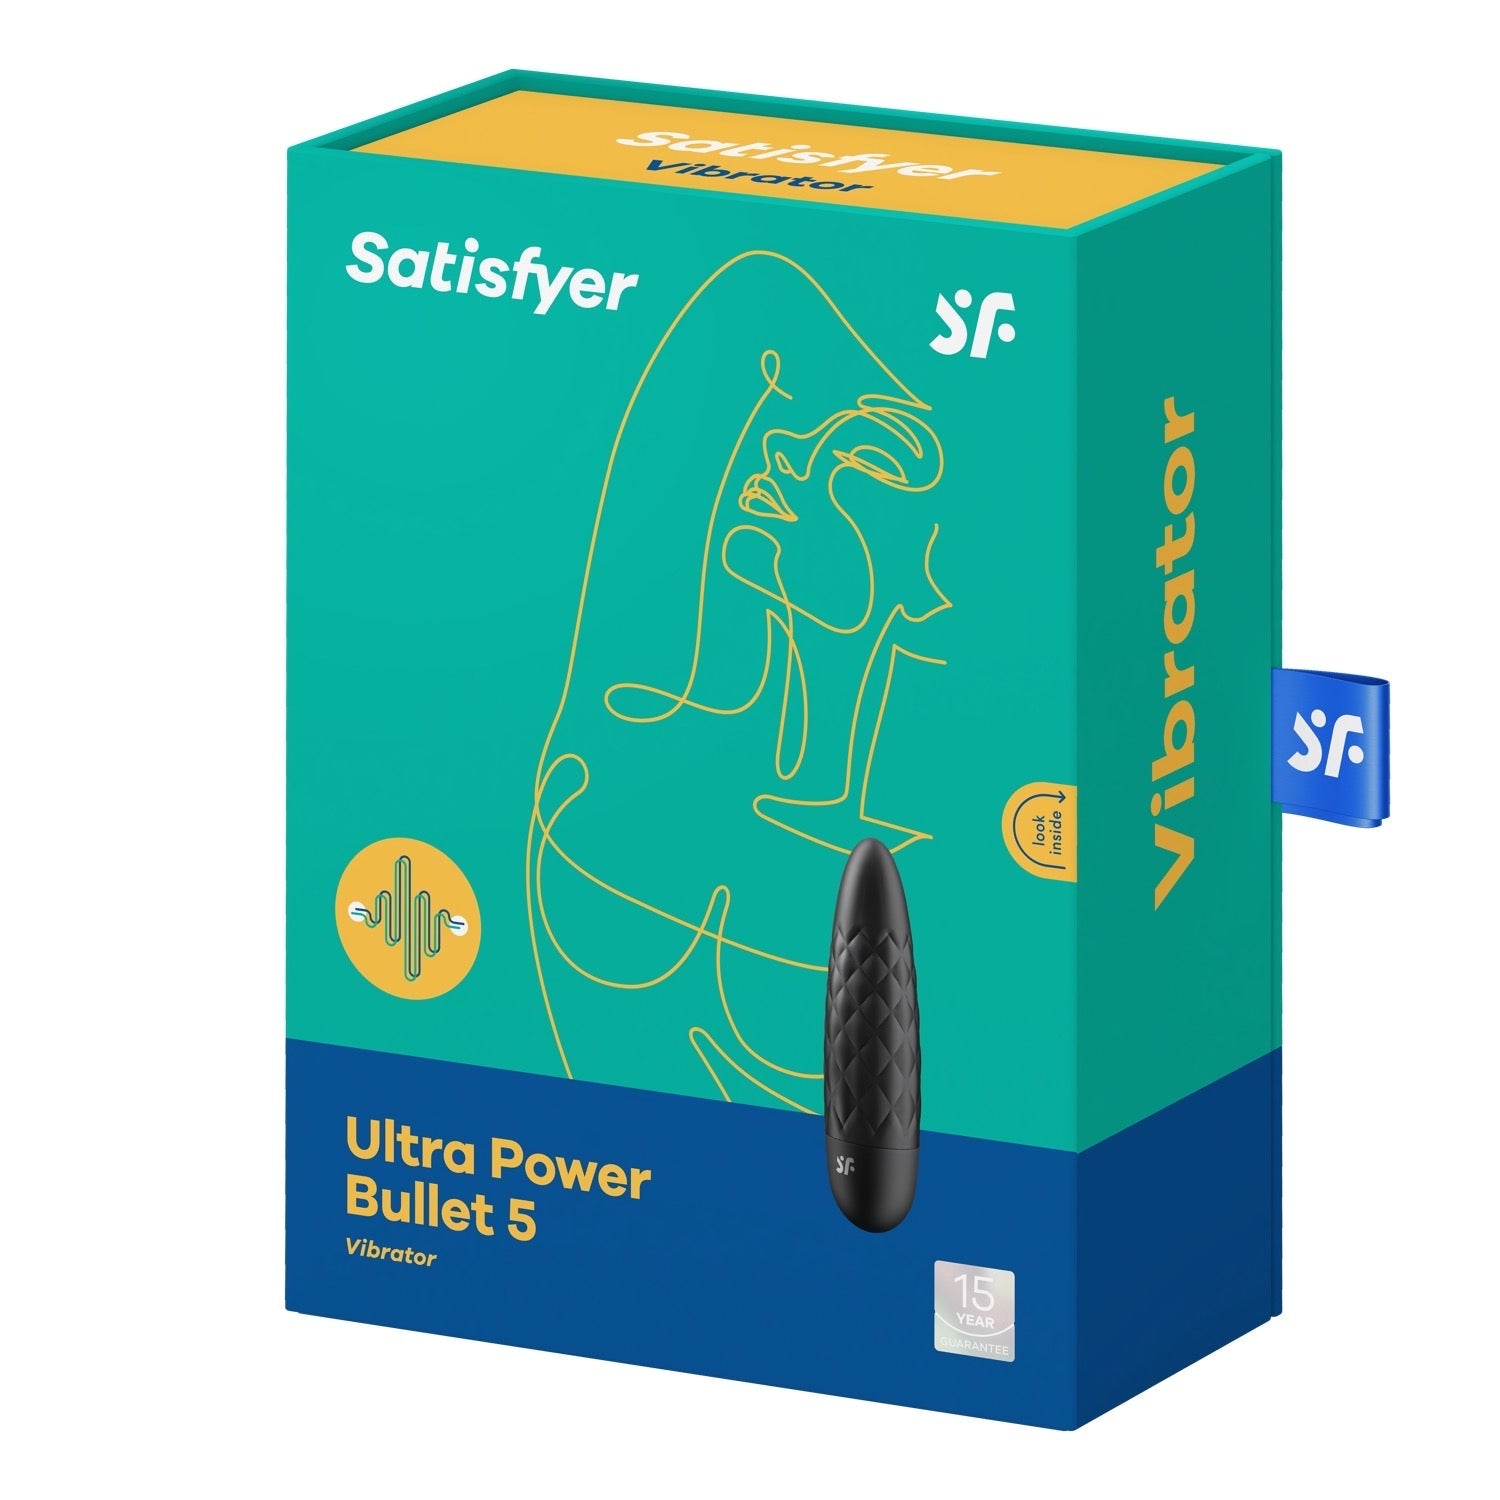 Satisfyer Ultra Power Bullet 5 - Black by Satisfyer